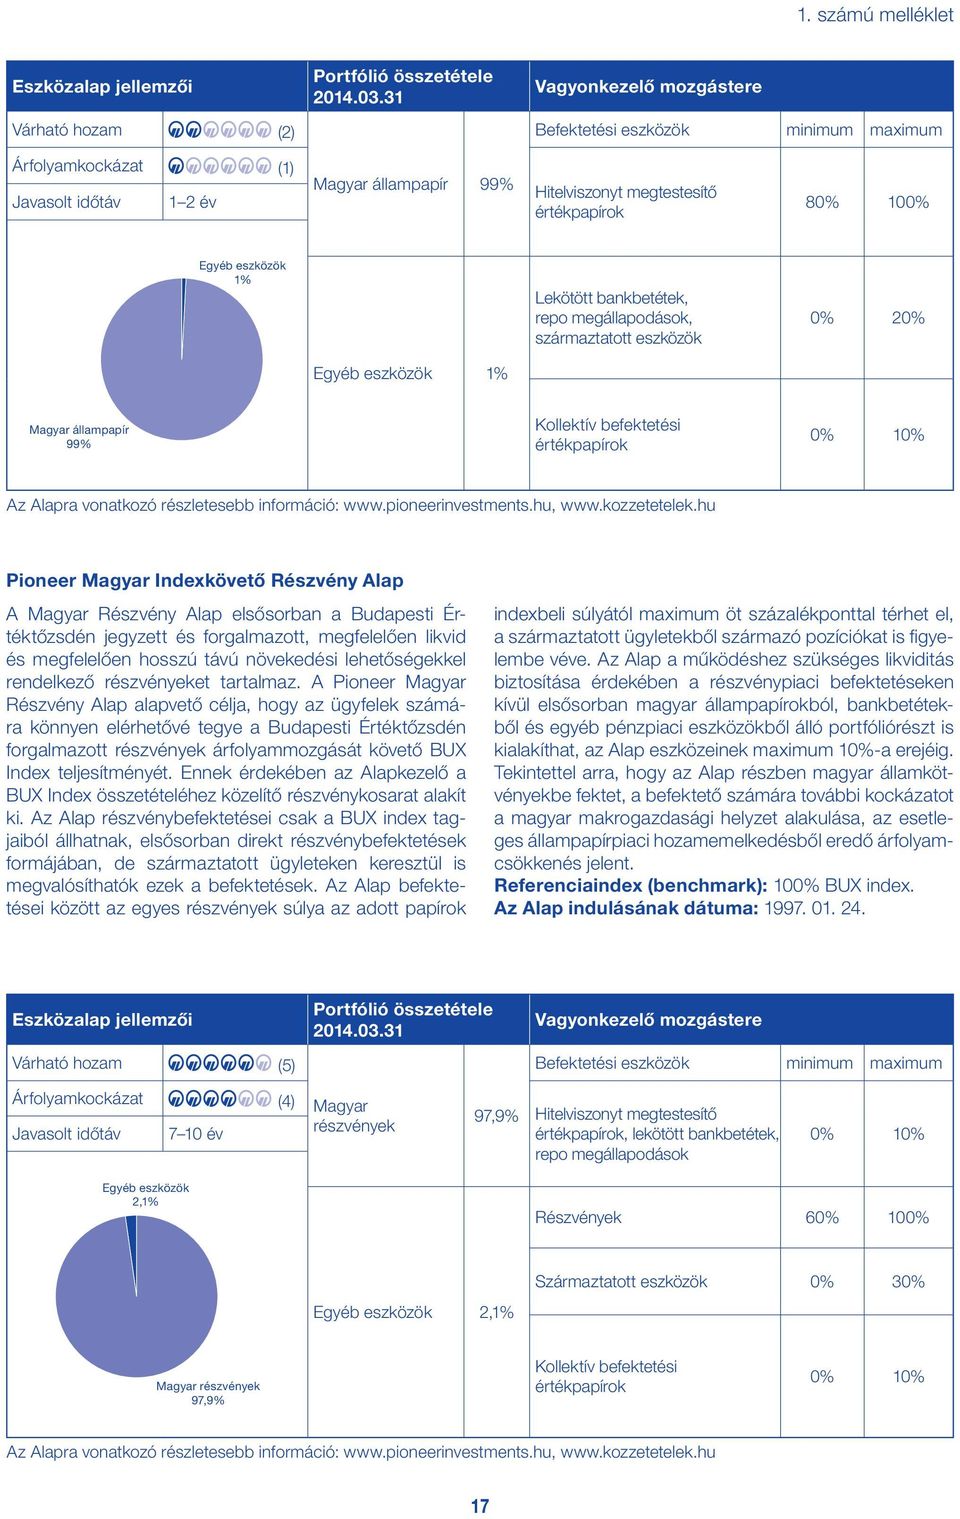 Egyéb eszközök 1% Magyar állampapír 99% Kollektív befektetési 0% 10% Az Alapra vonatkozó részletesebb információ: www.pioneerinvestments.hu, www.kozzetetelek.